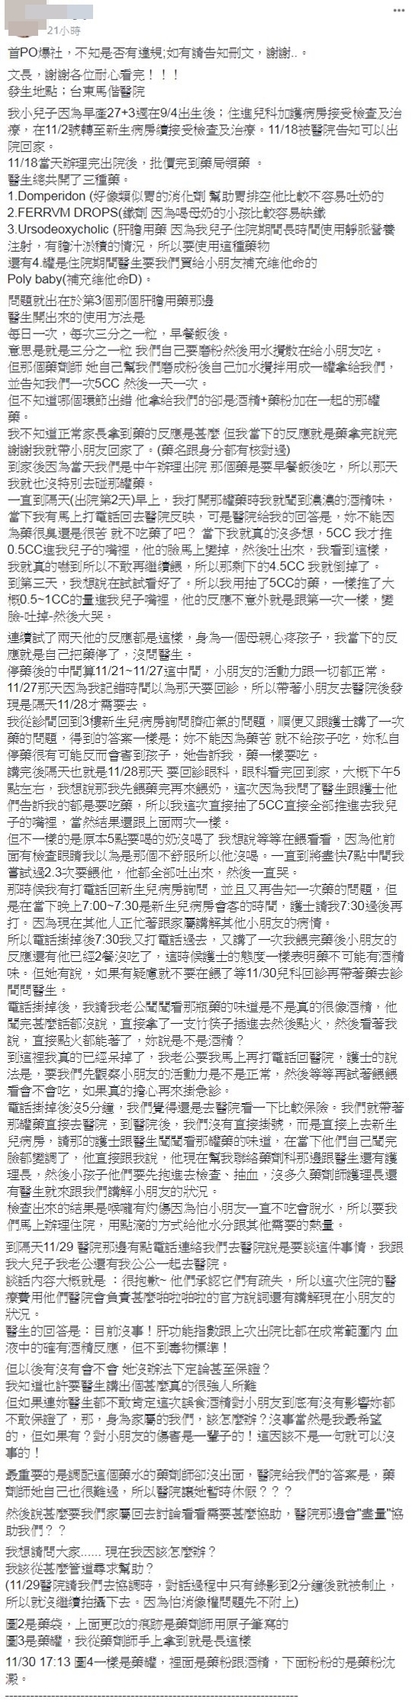 調錯藥害男嬰誤食酒精 台東馬偕道歉"醫療疏失" | PO文指控醫療疏失。